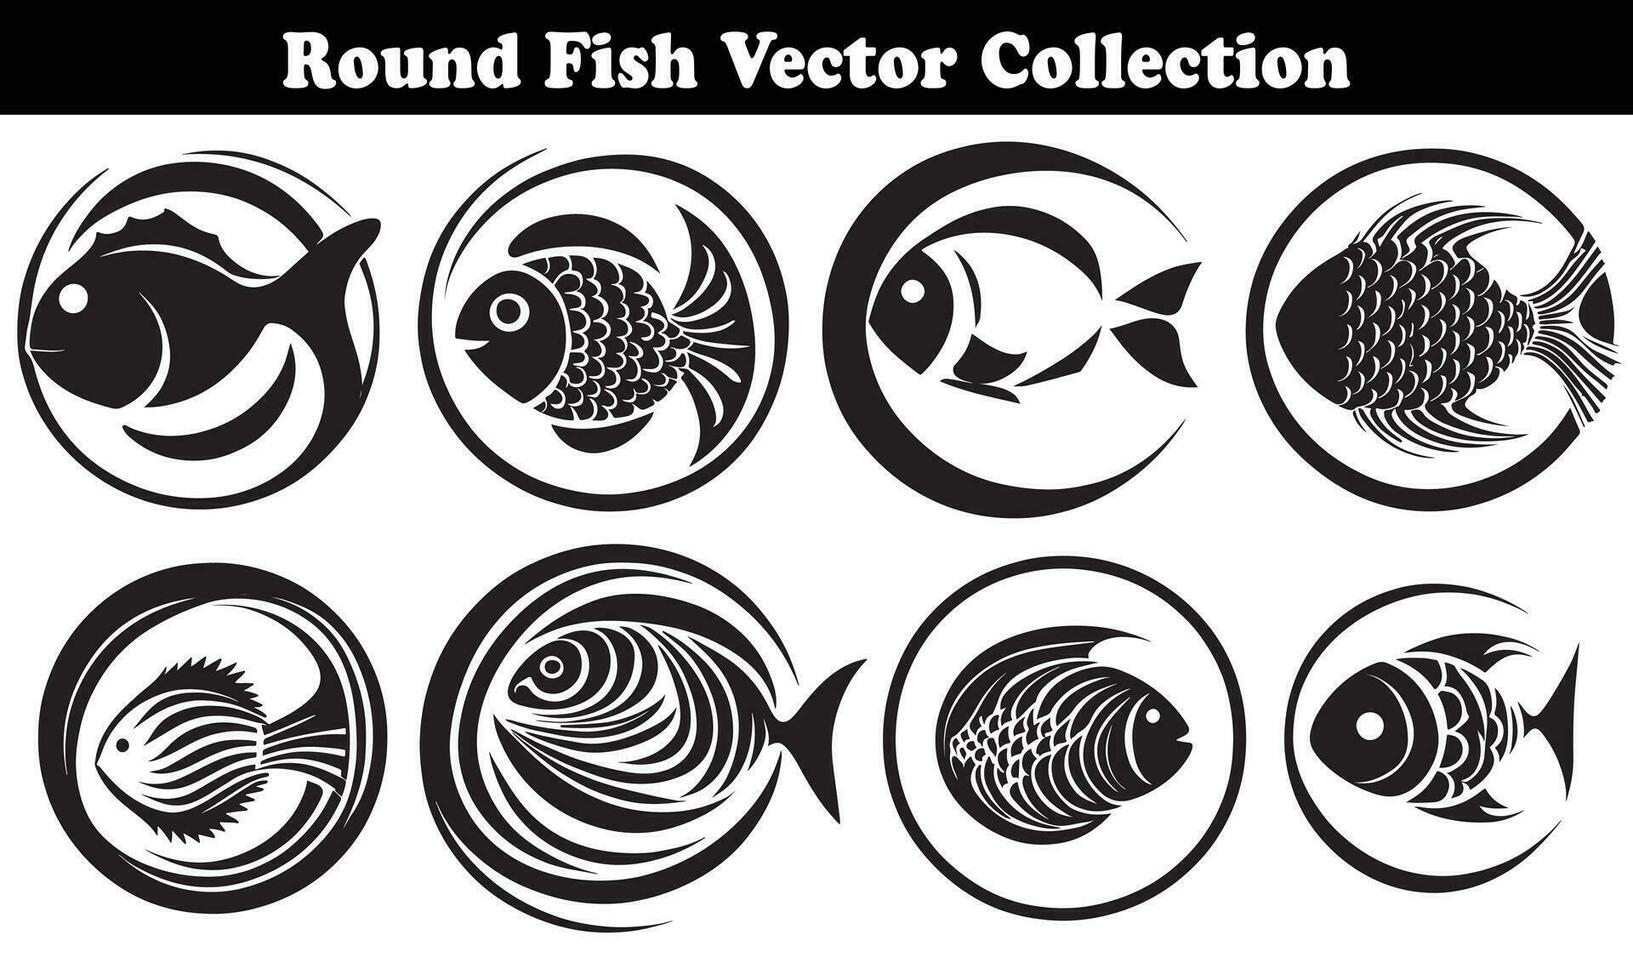 Round Fish Vector Design back on white background for designer